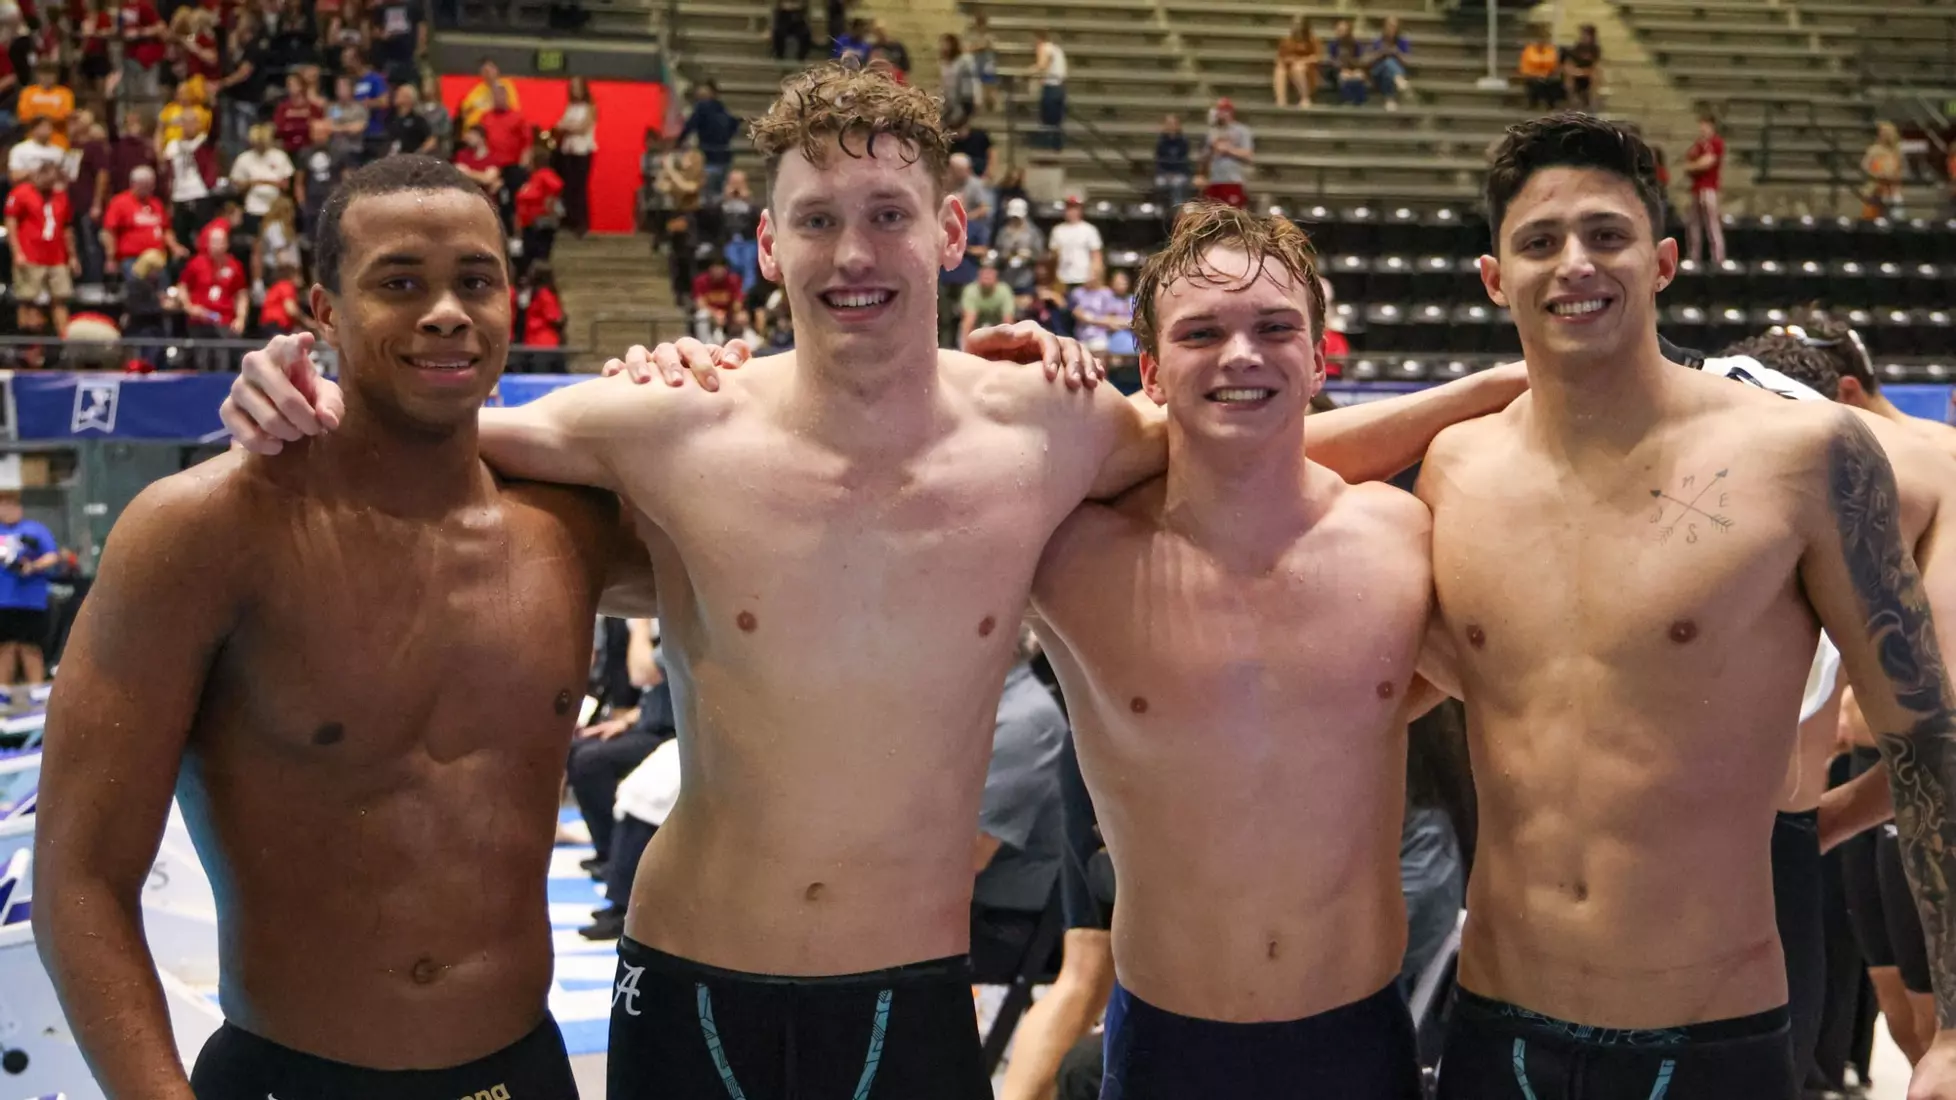 Οι κολυμβητές της Αλαμπάμα λάμπουν στο πρωτάθλημα NCAA, κερδίζοντας τιμητικές διακρίσεις σε όλη την Αμερική